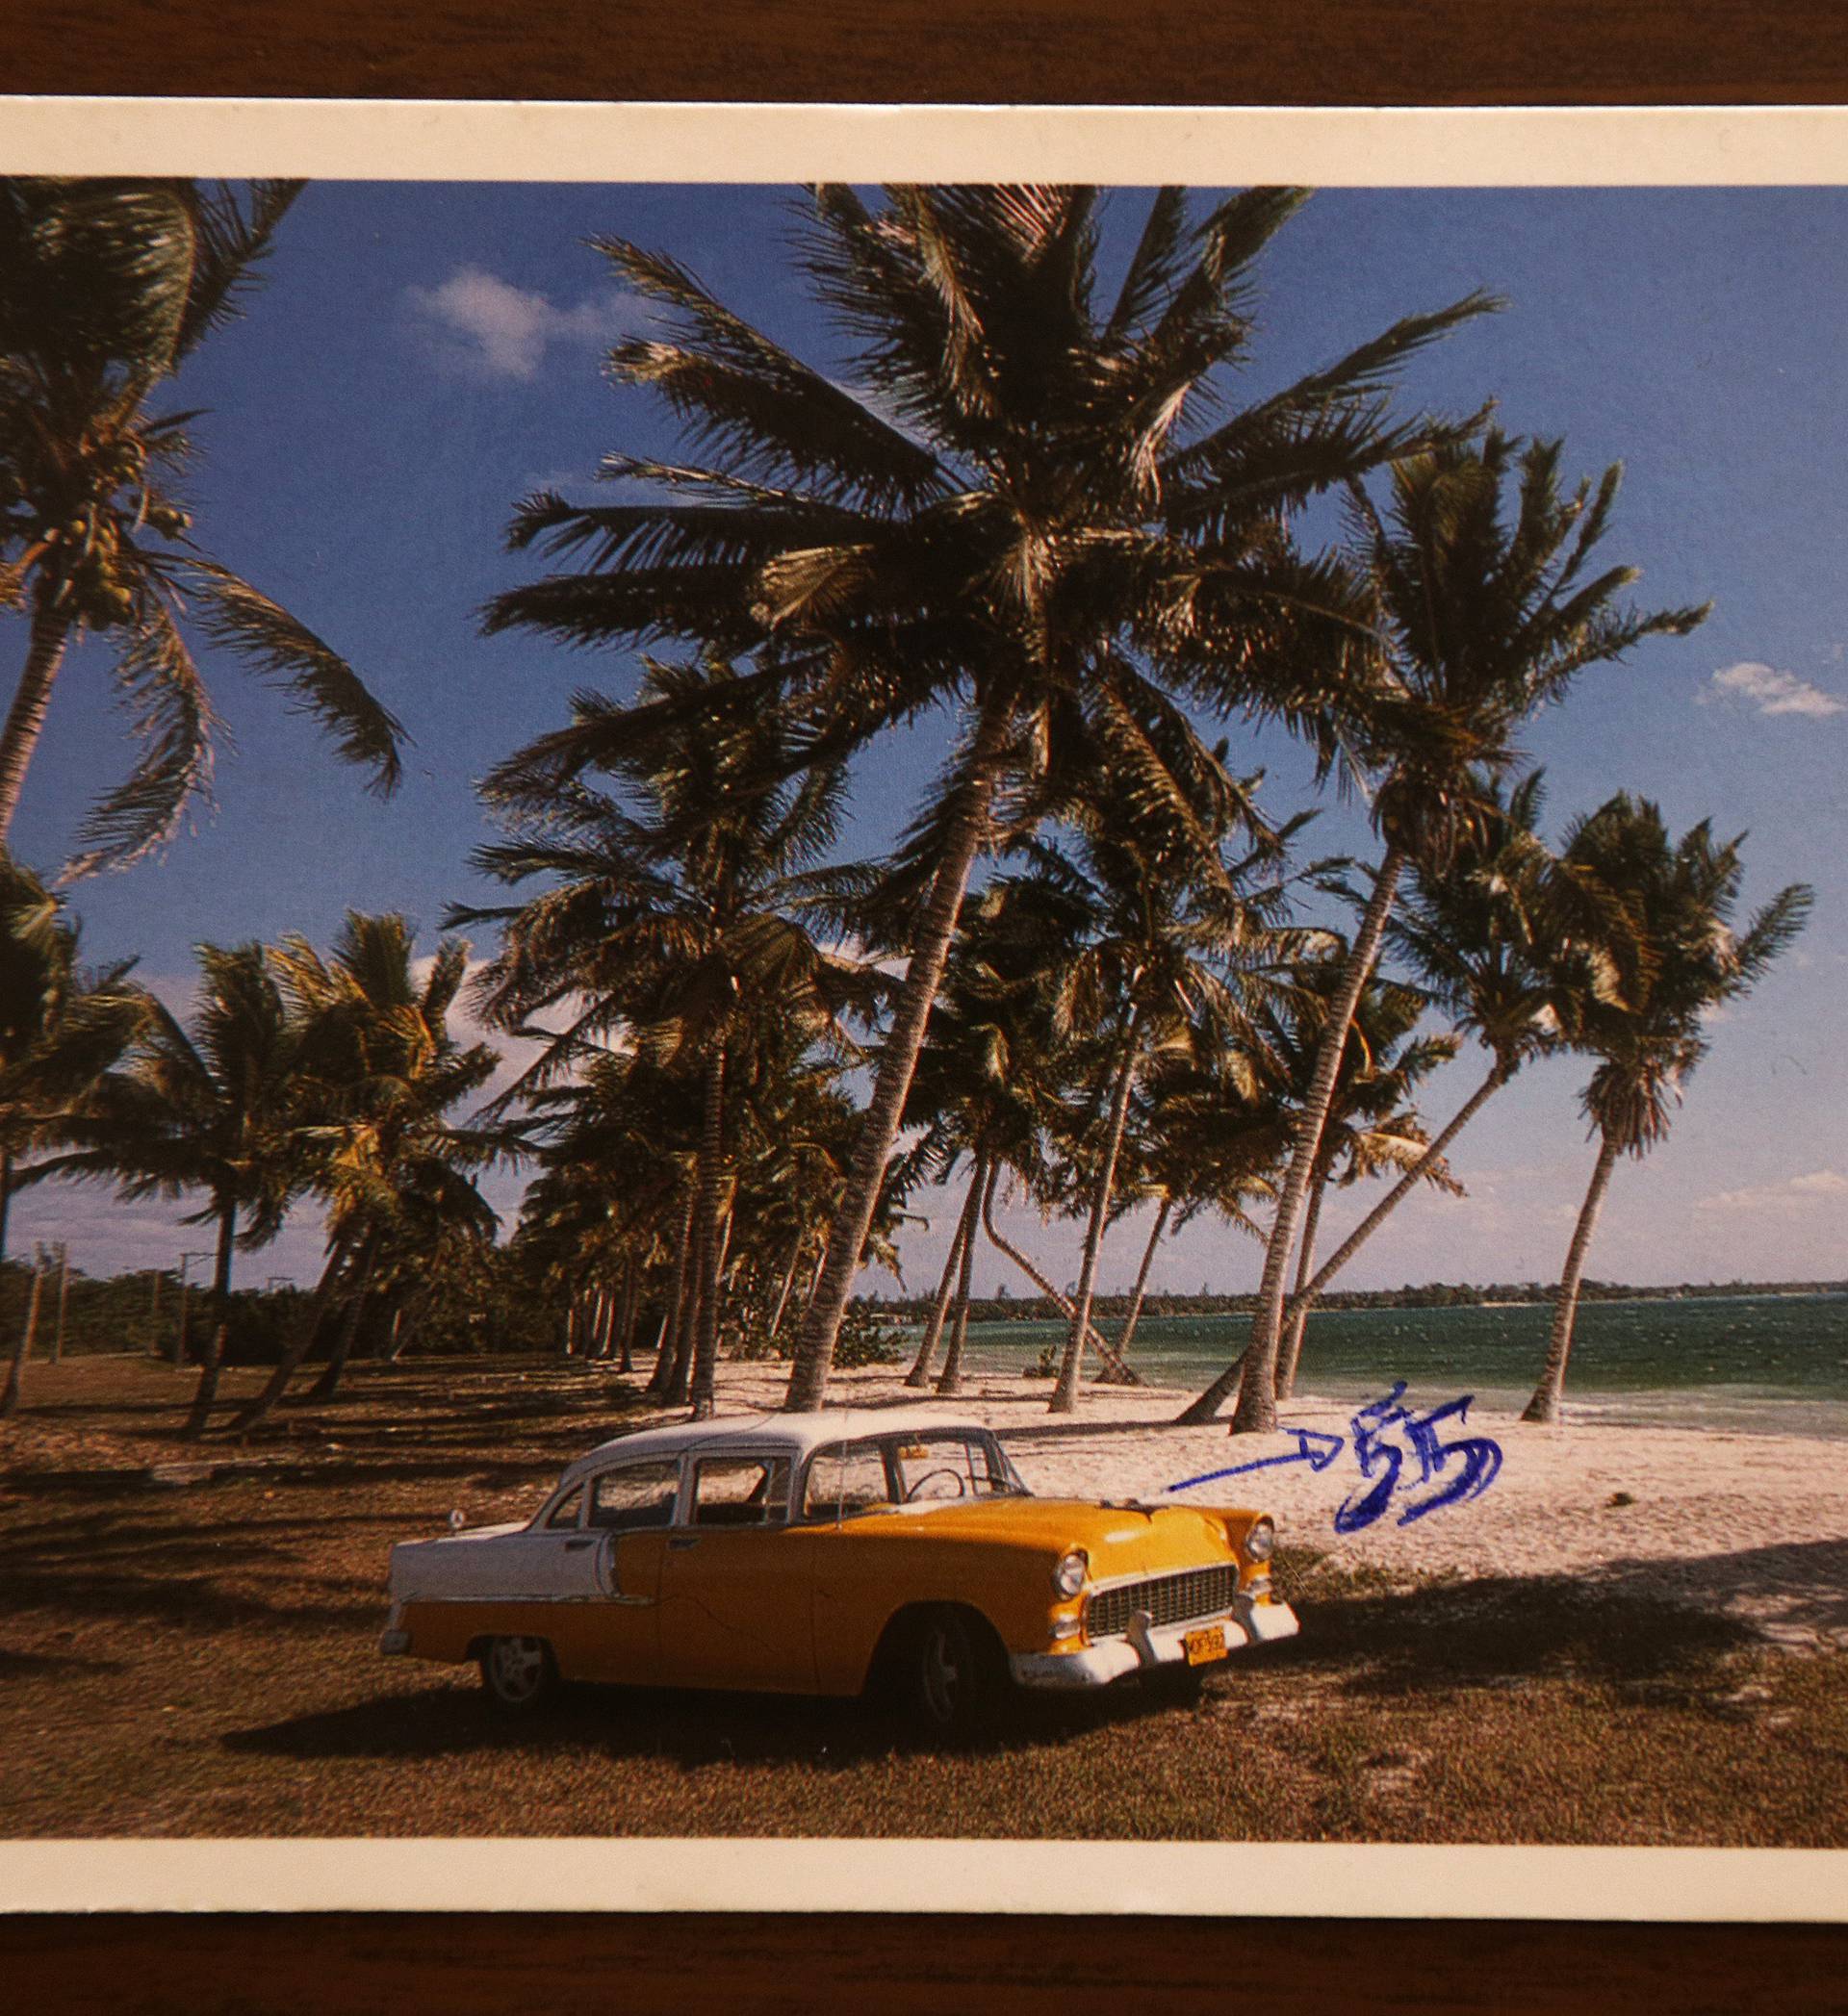 Slat će i dalje: Razglednica je s Kube putovala devet godina